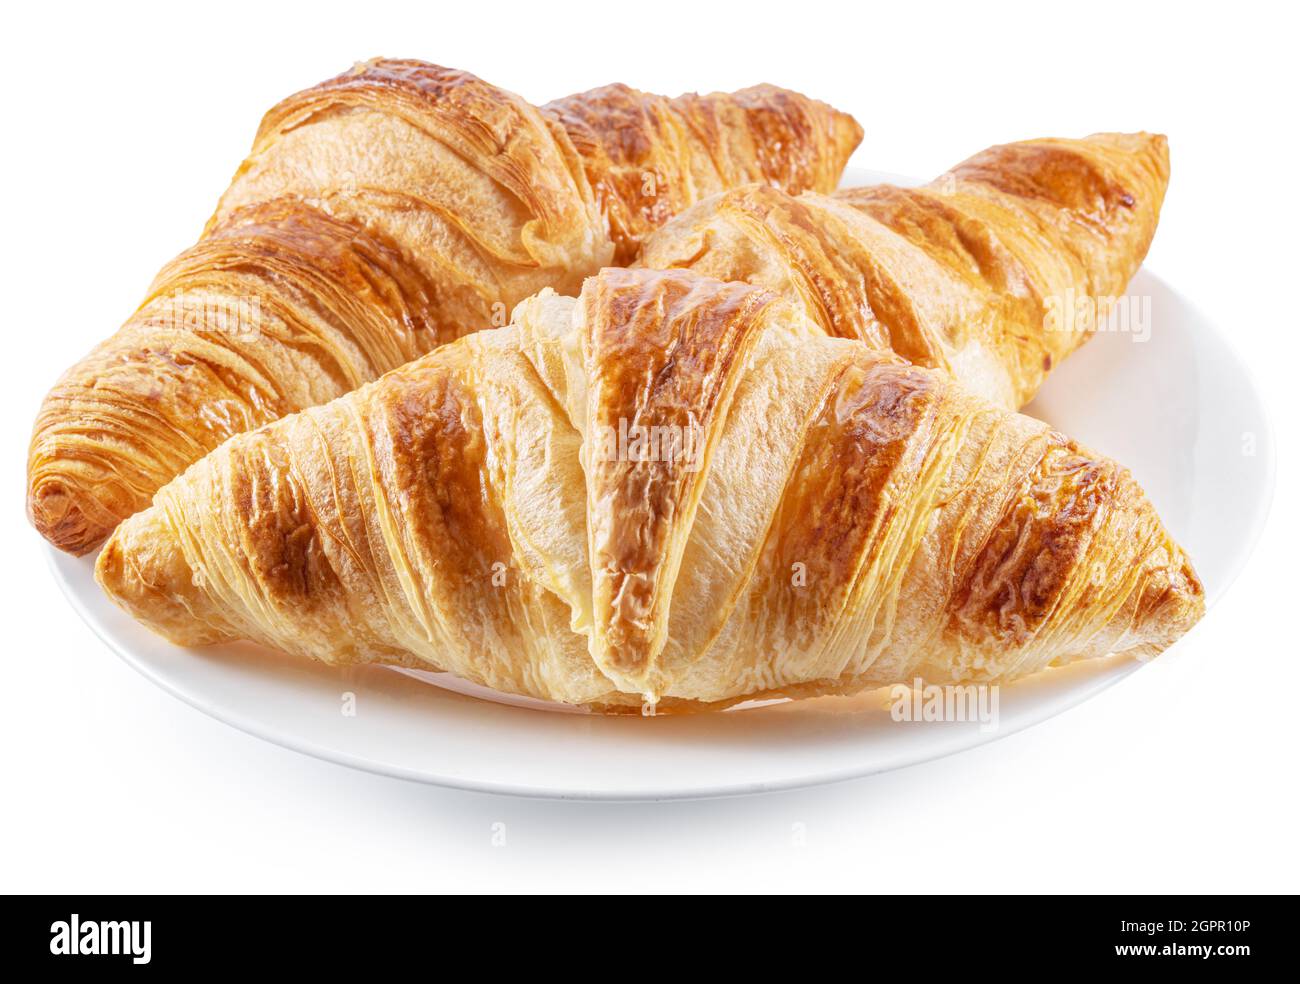 Gustosi croissant croccanti sul piatto su sfondo bianco. Foto Stock